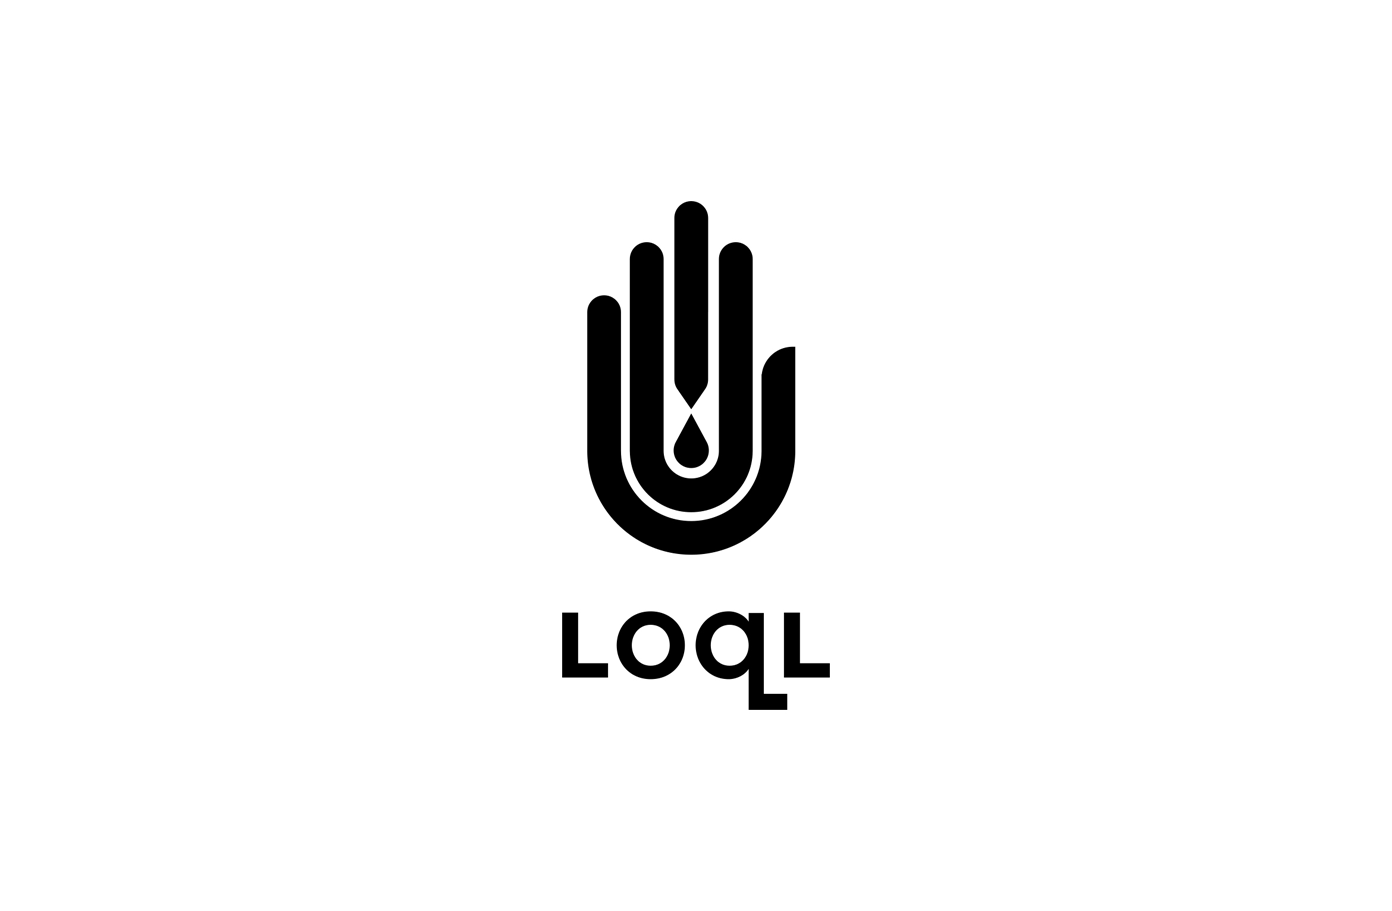 LOQL black on white logo design